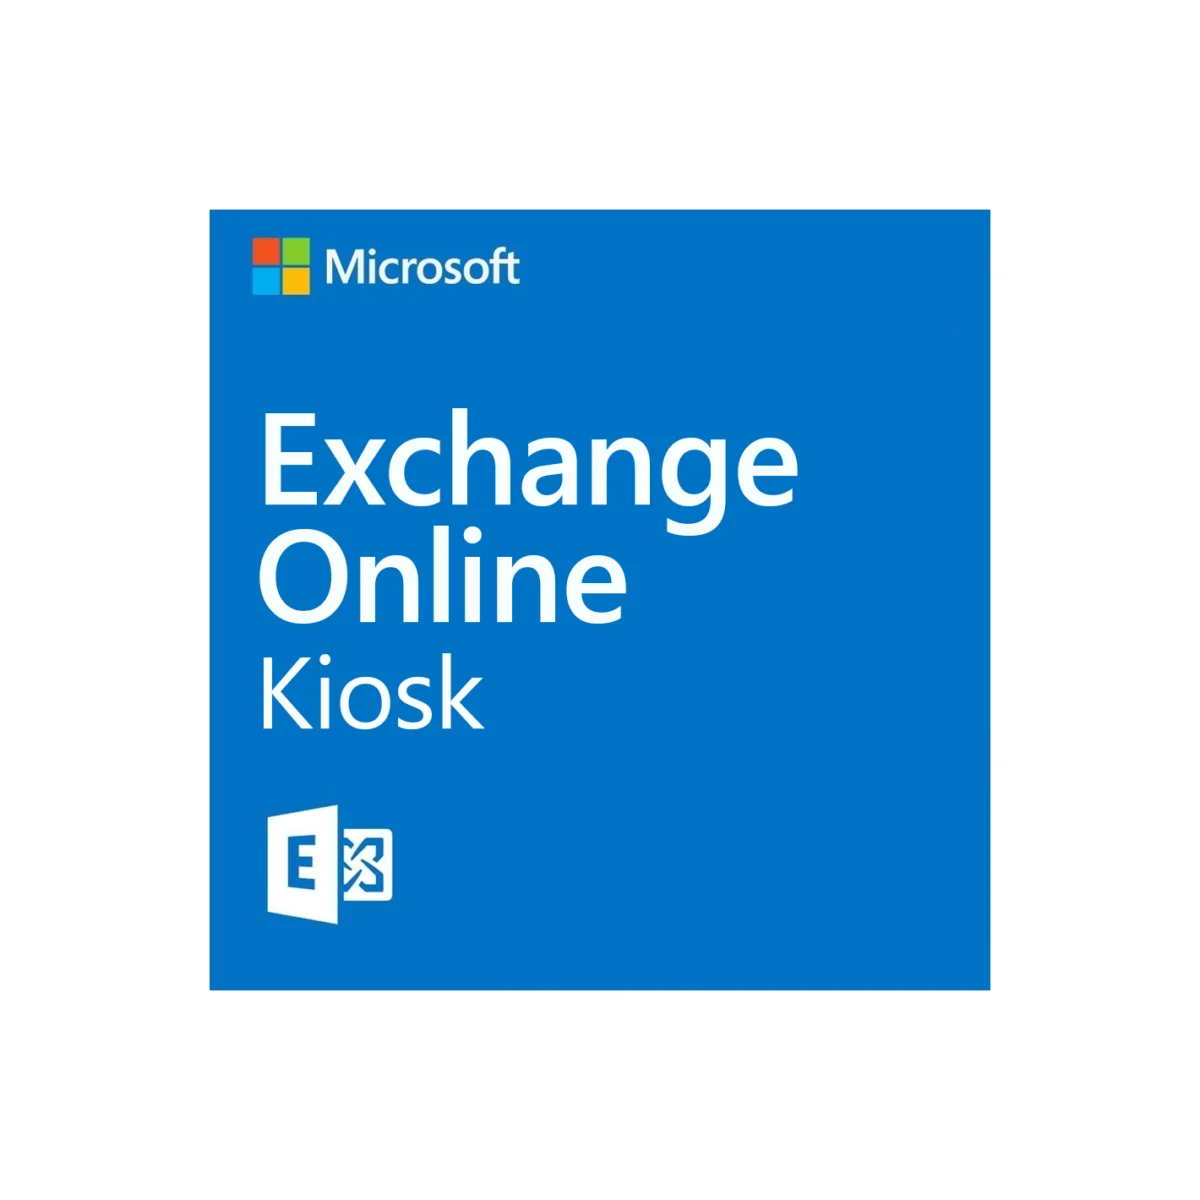 Exchange Online Kiosk